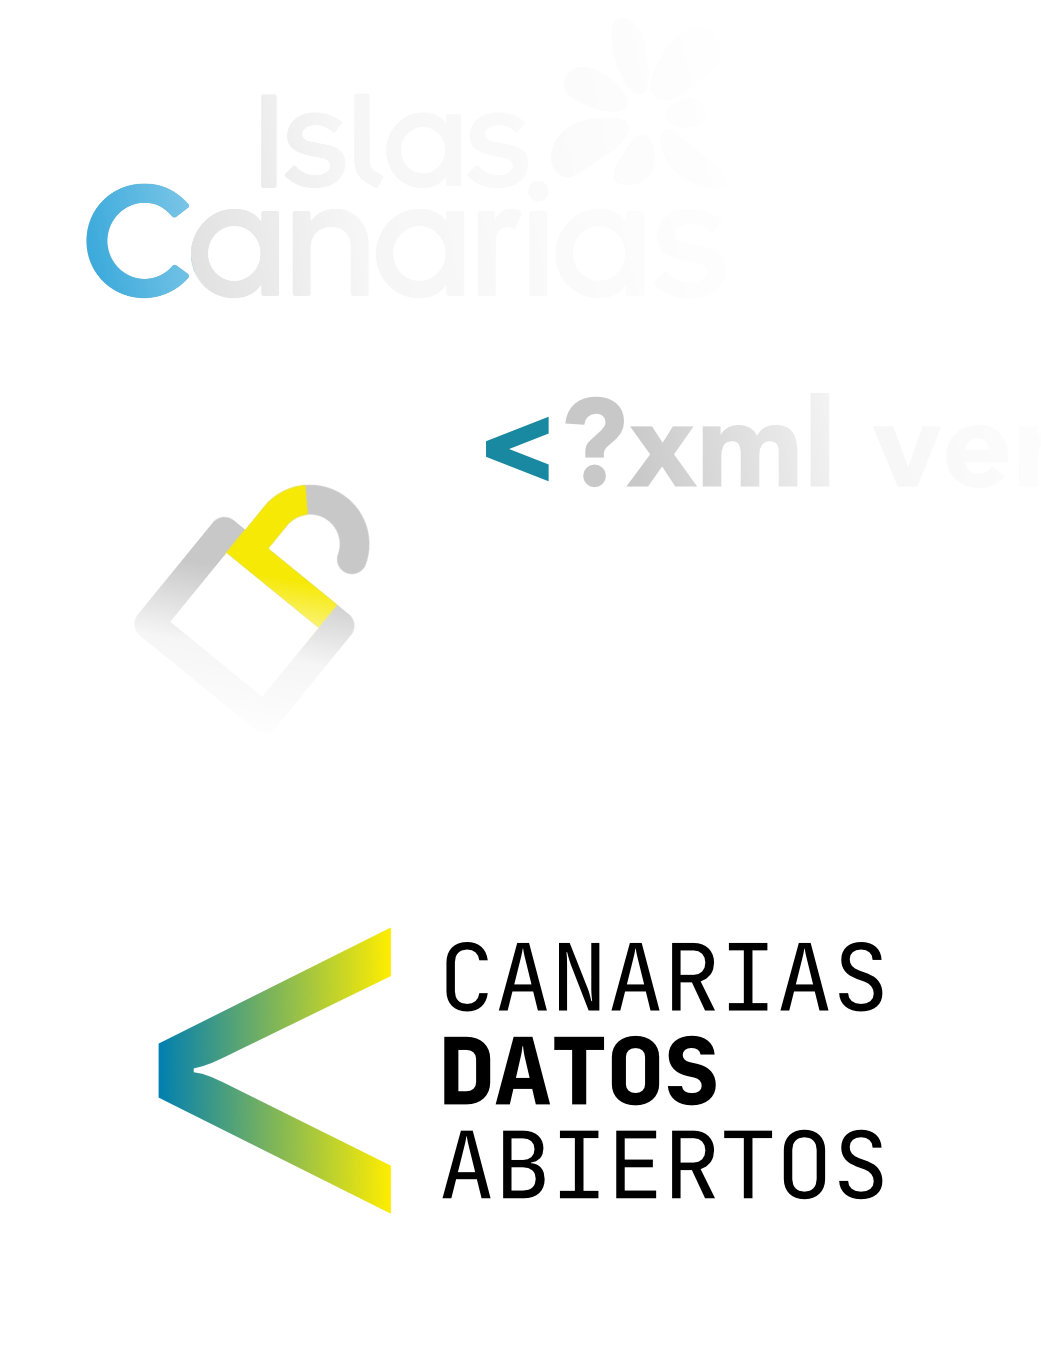 El origen del logo, Canarias Datos Abiertos